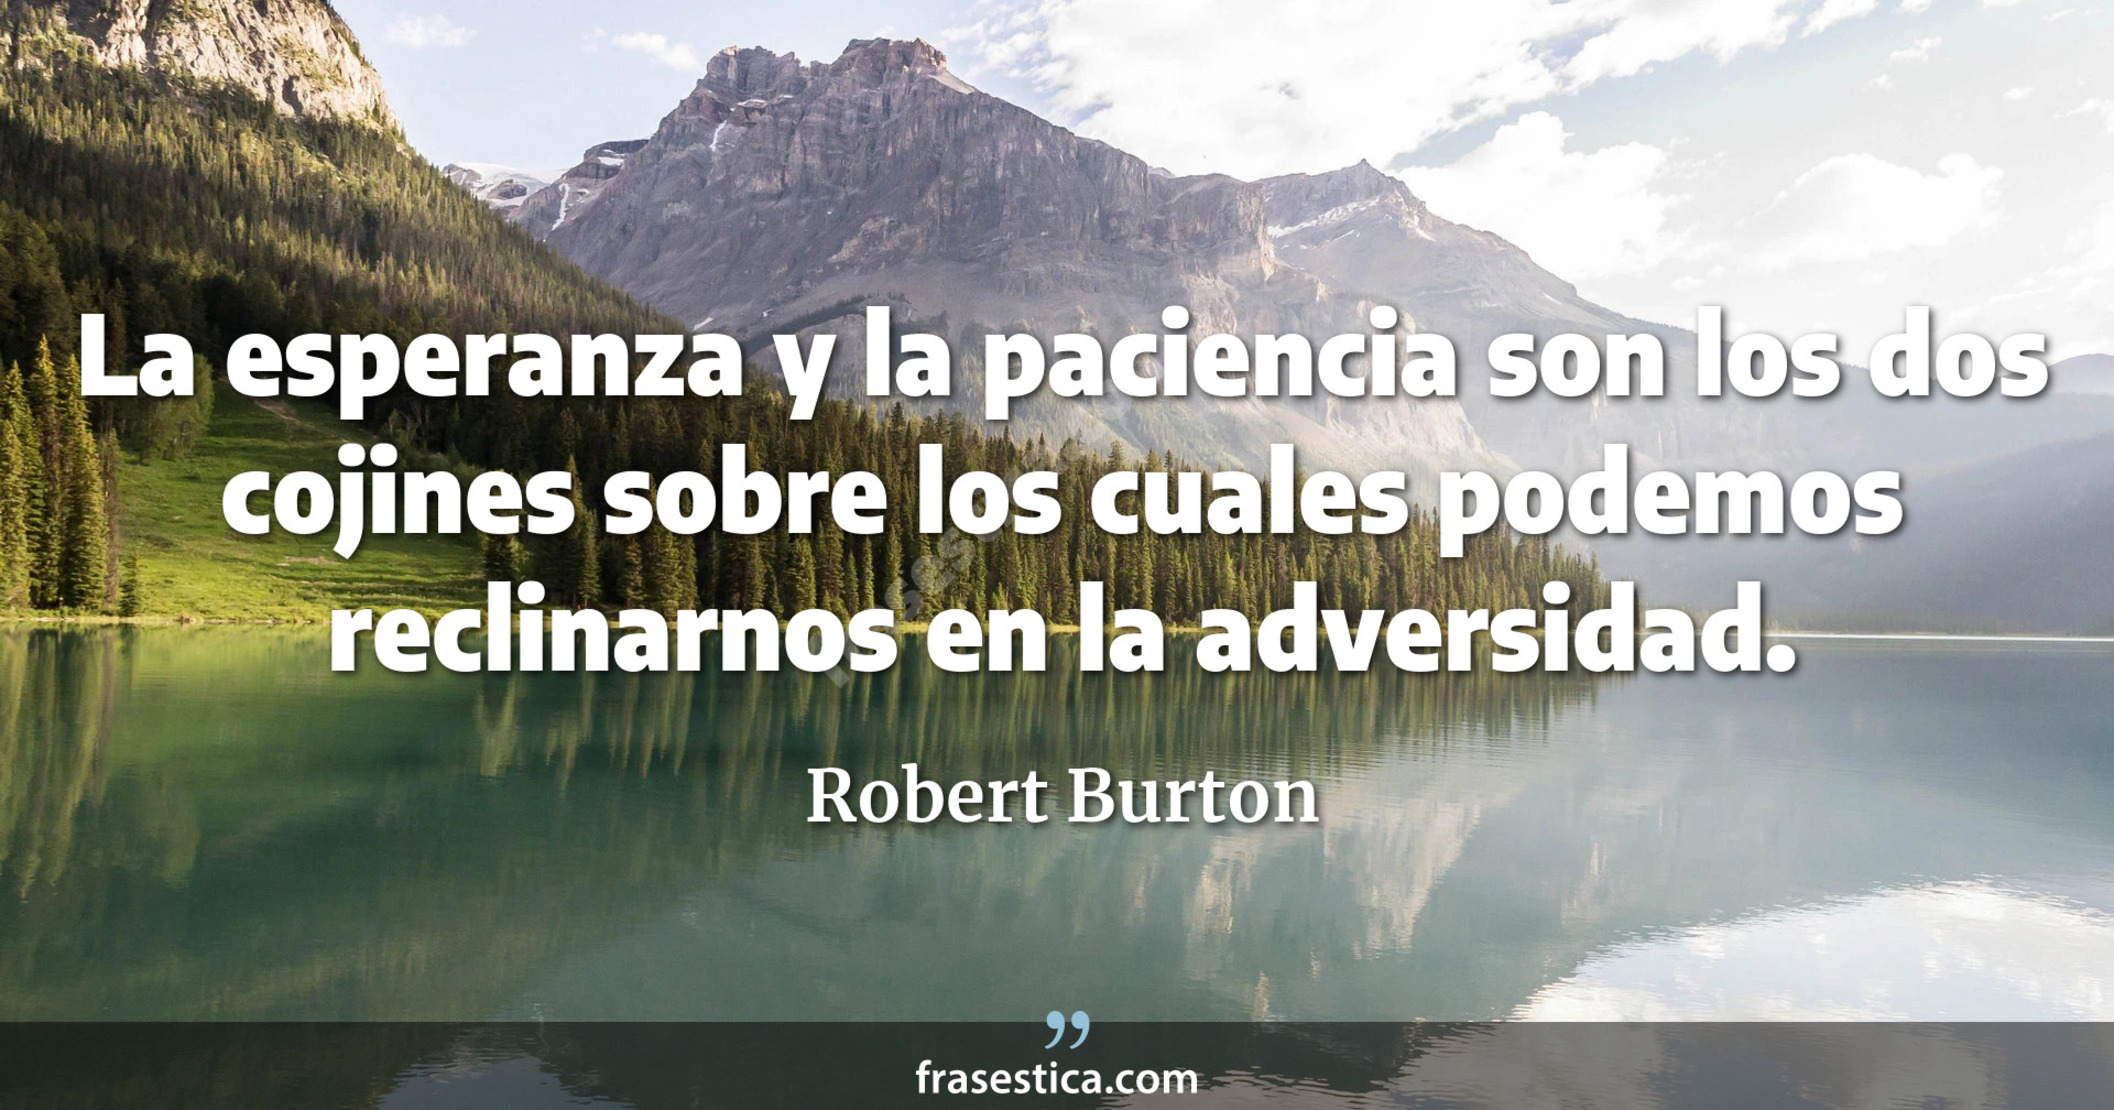 La esperanza y la paciencia son los dos cojines sobre los cuales podemos reclinarnos en la adversidad. - Robert Burton